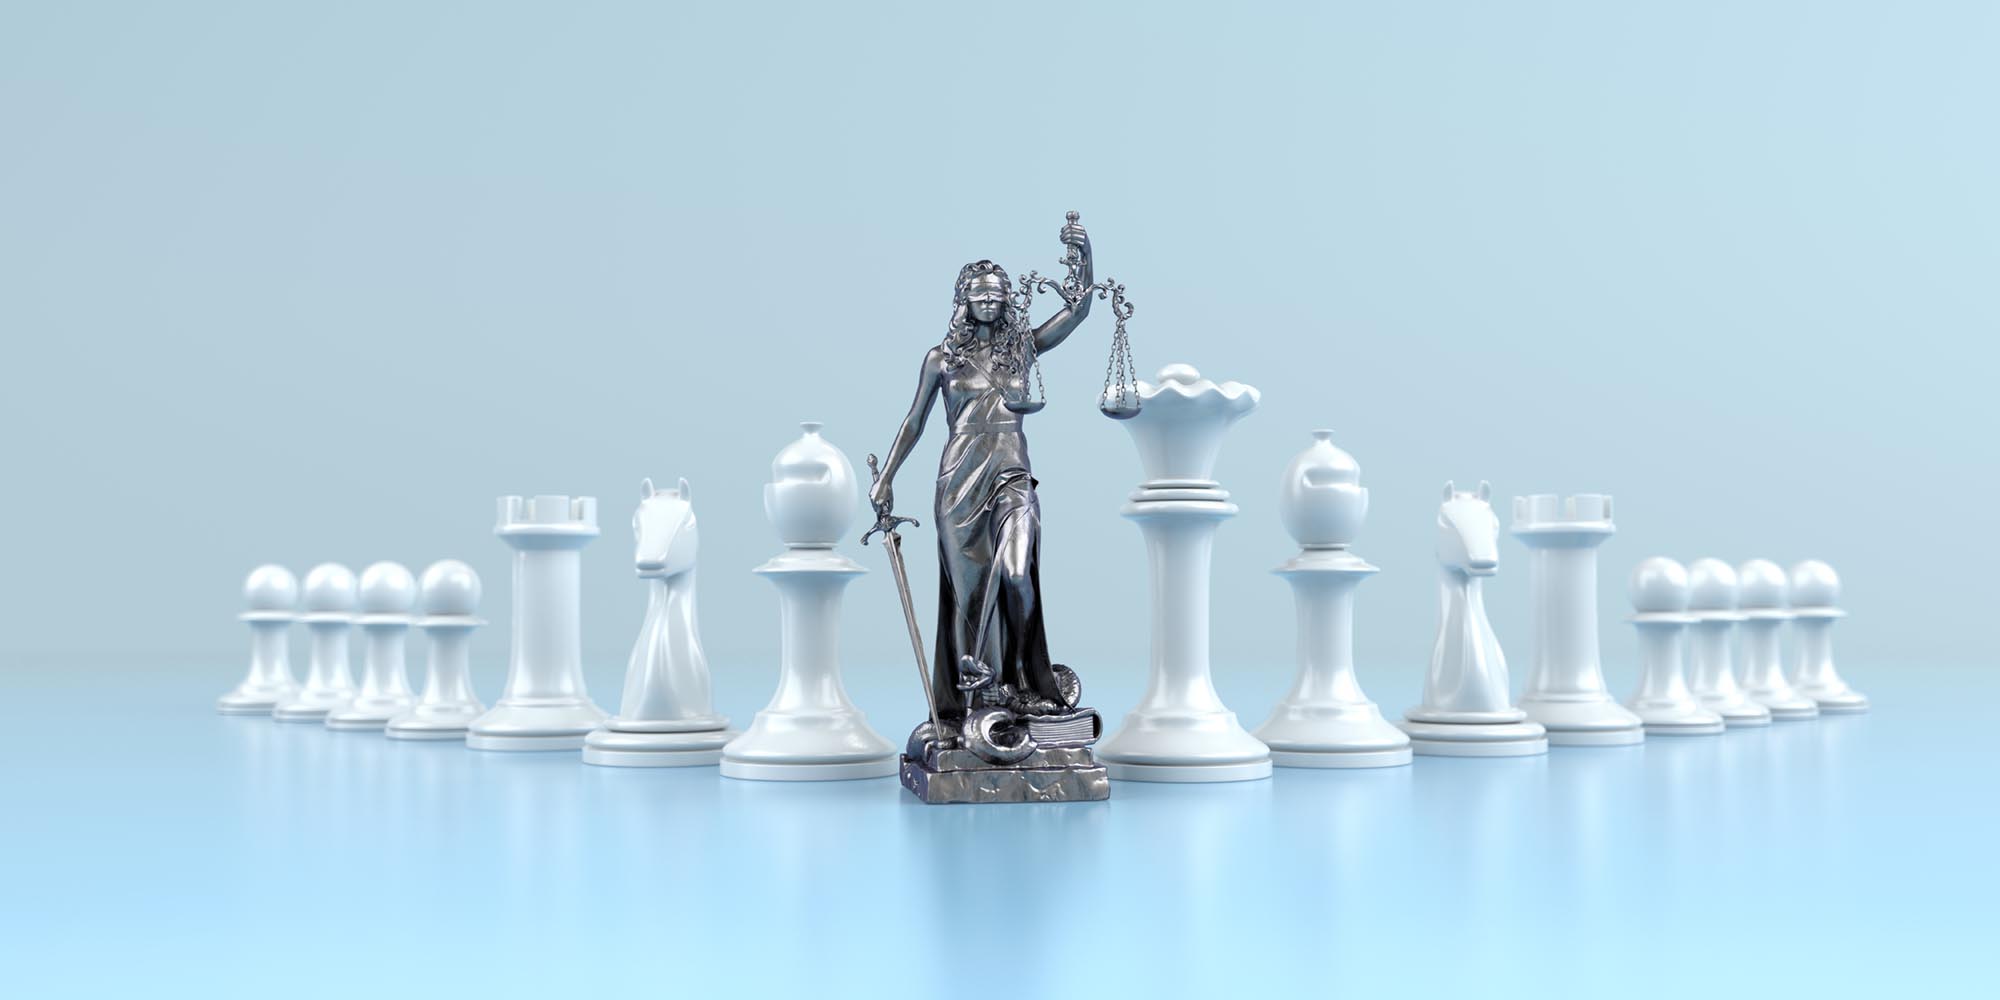 Schachfiguren mit einer Justitia in der Mitte